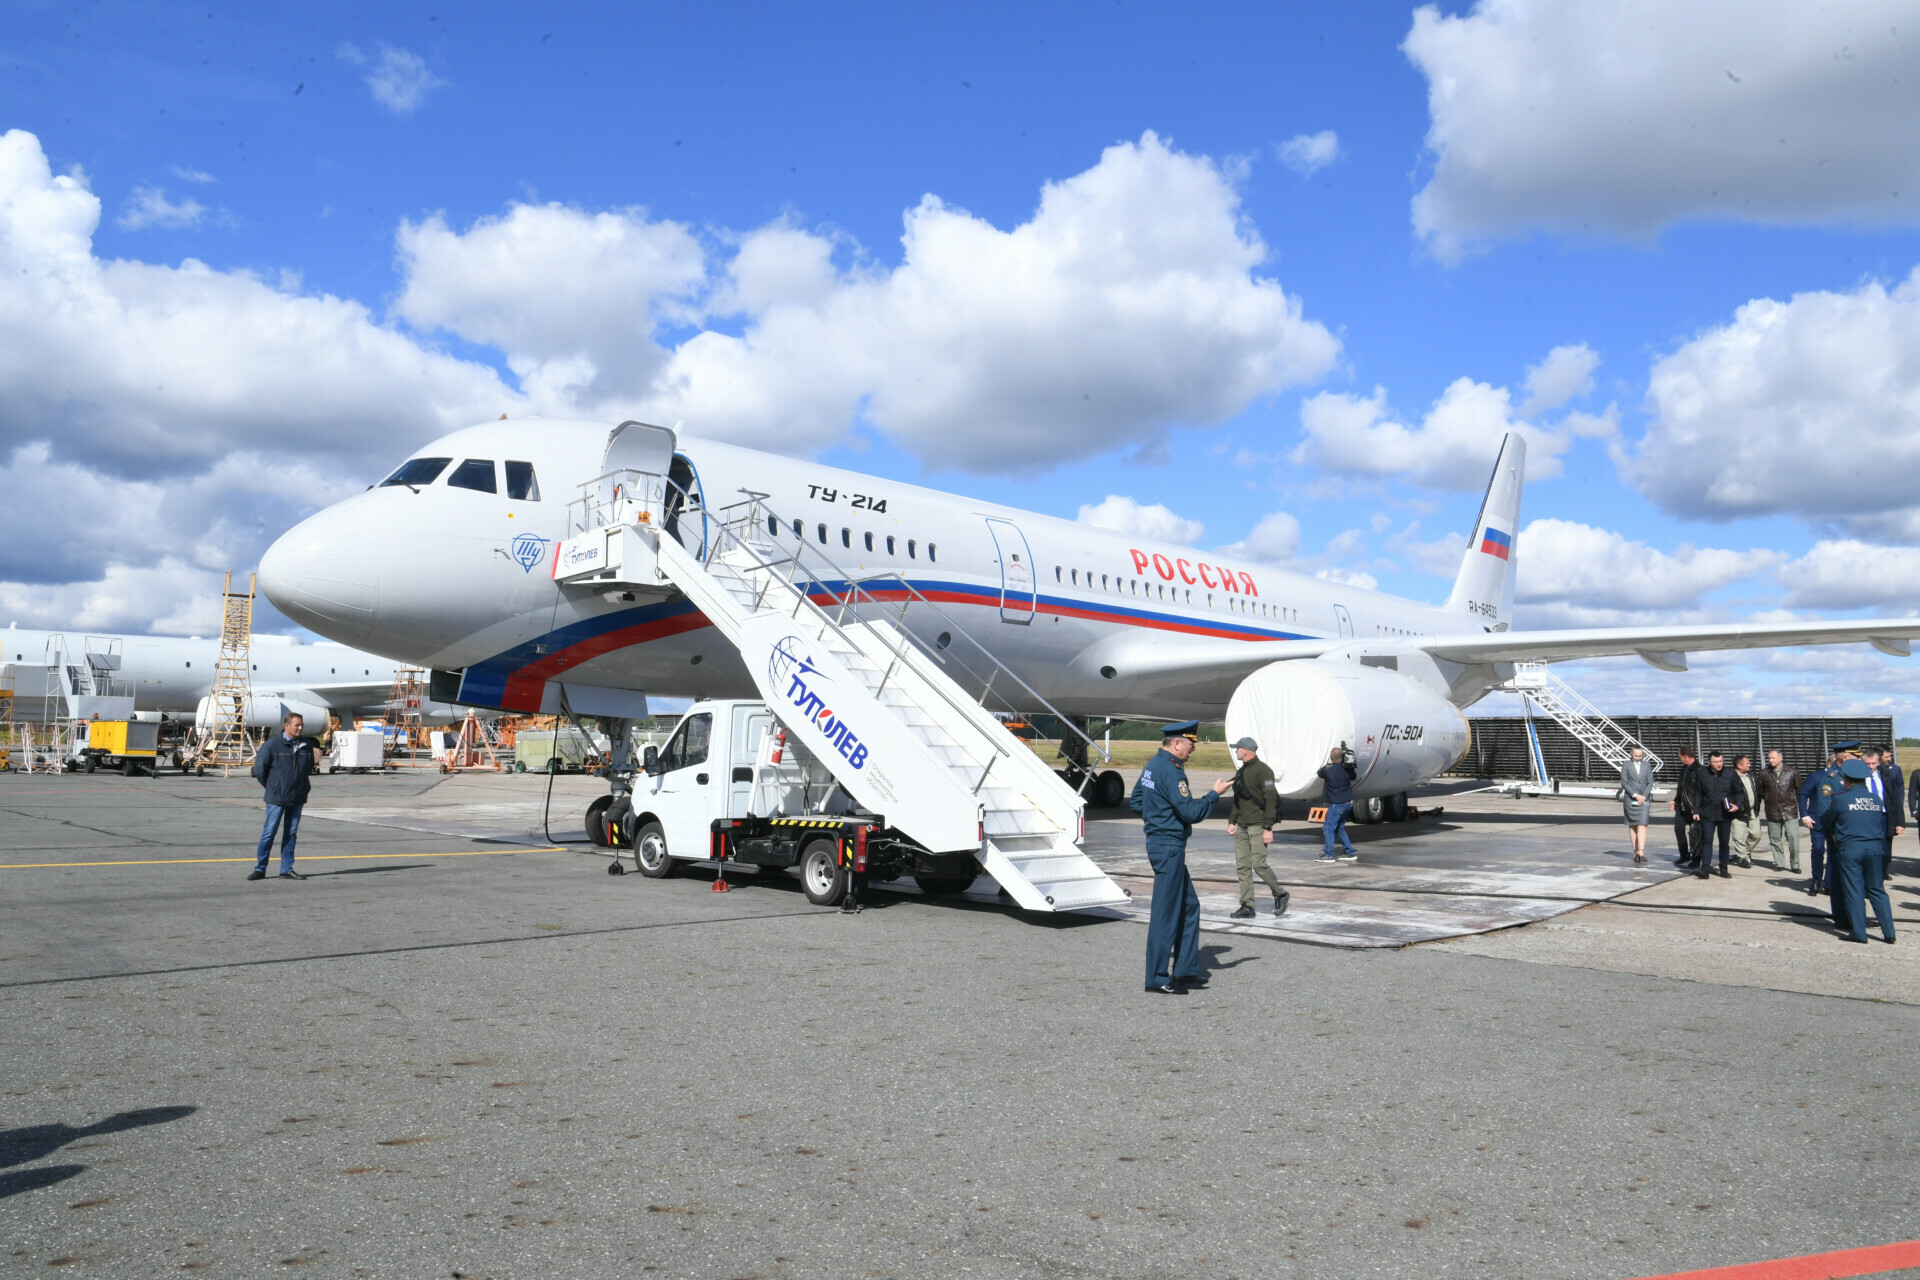 «Аэрофлот» и ОАК договорились о конфигурации салонов лайнеров Ту-214